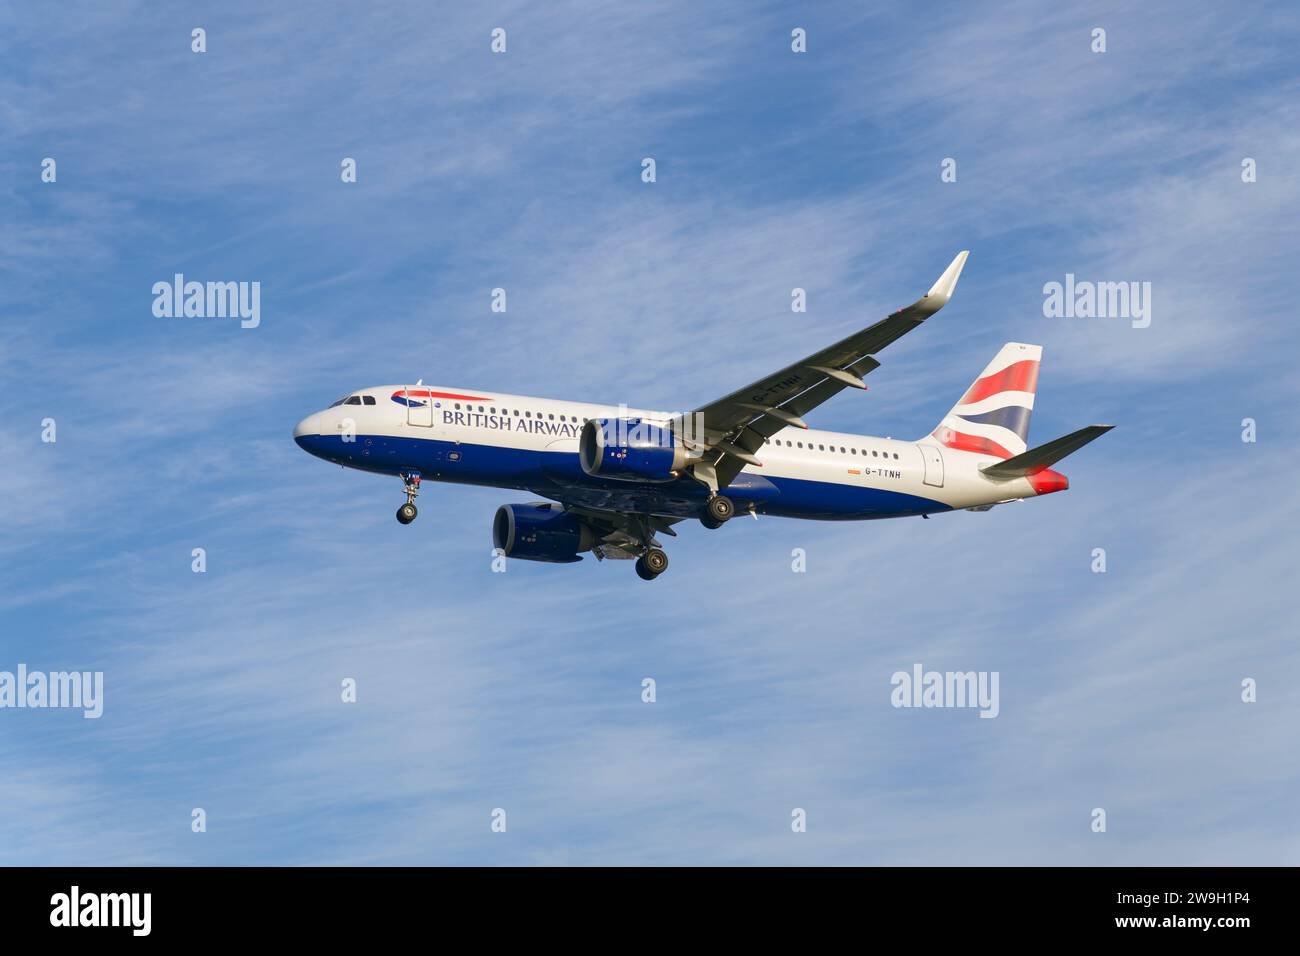 British Airways Airbus A320-251 Passagier Jet Airplane Registration G-TTNH im kurzen Finale für eine Landung auf der Landebahn 27L am Flughafen Heathrow in der Nähe von London Stockfoto